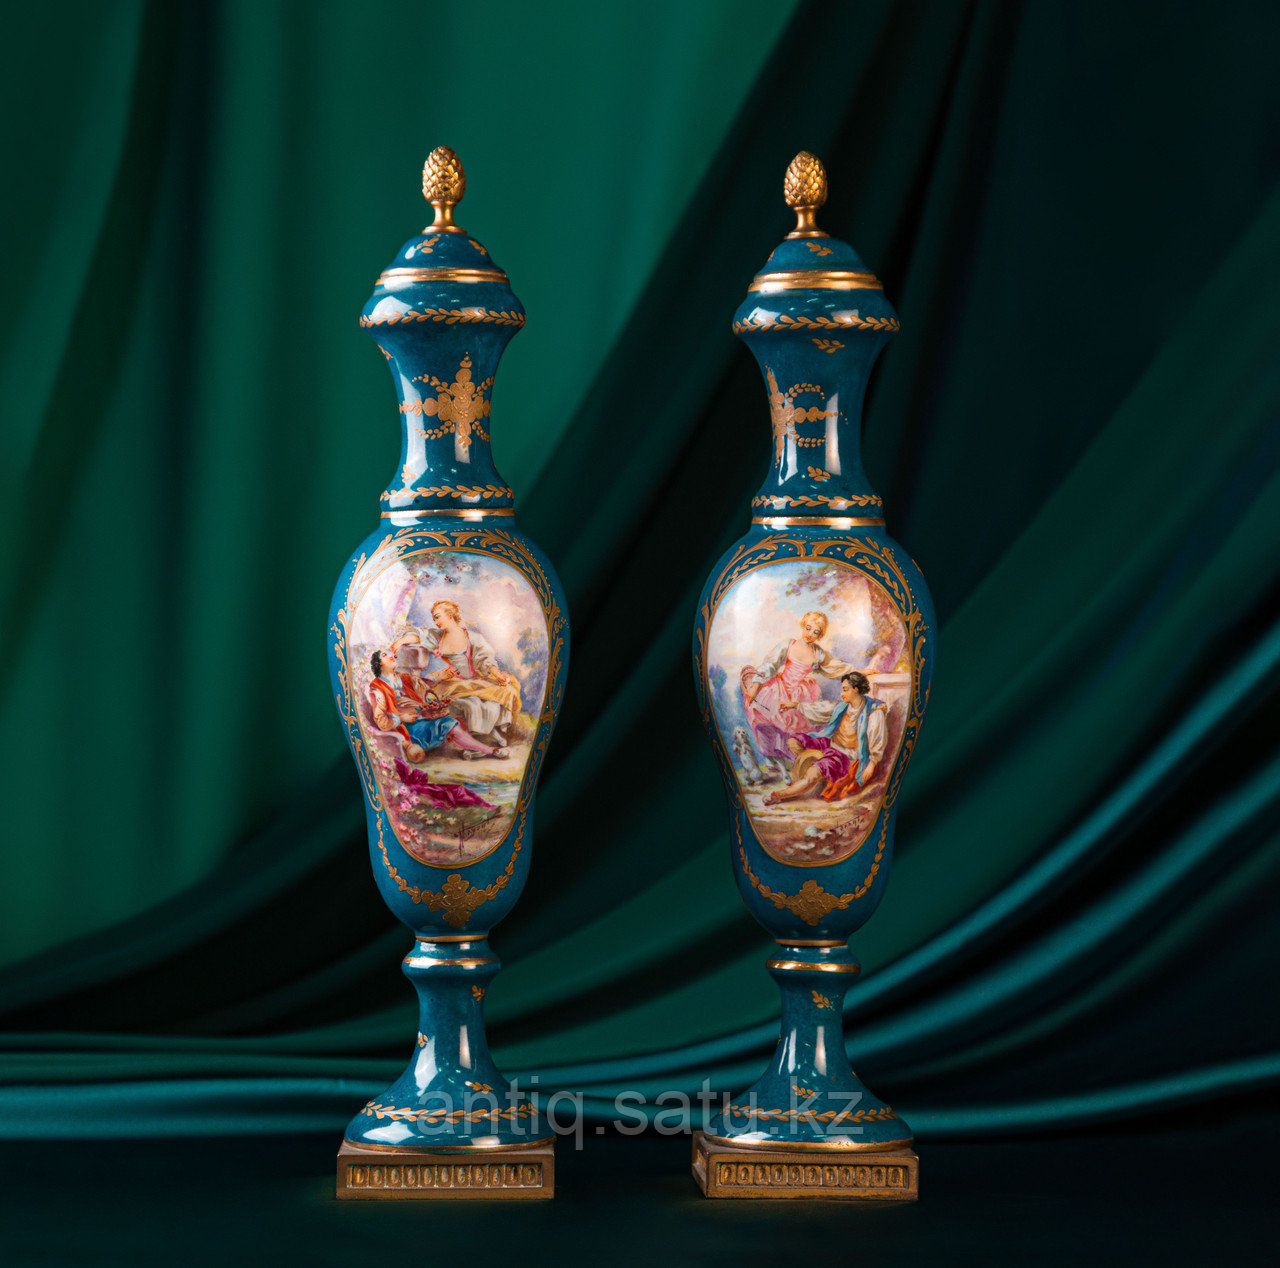 Парные вазы в дворцовом стиле. Фарфоровая мануфактура Sevres (Севр)